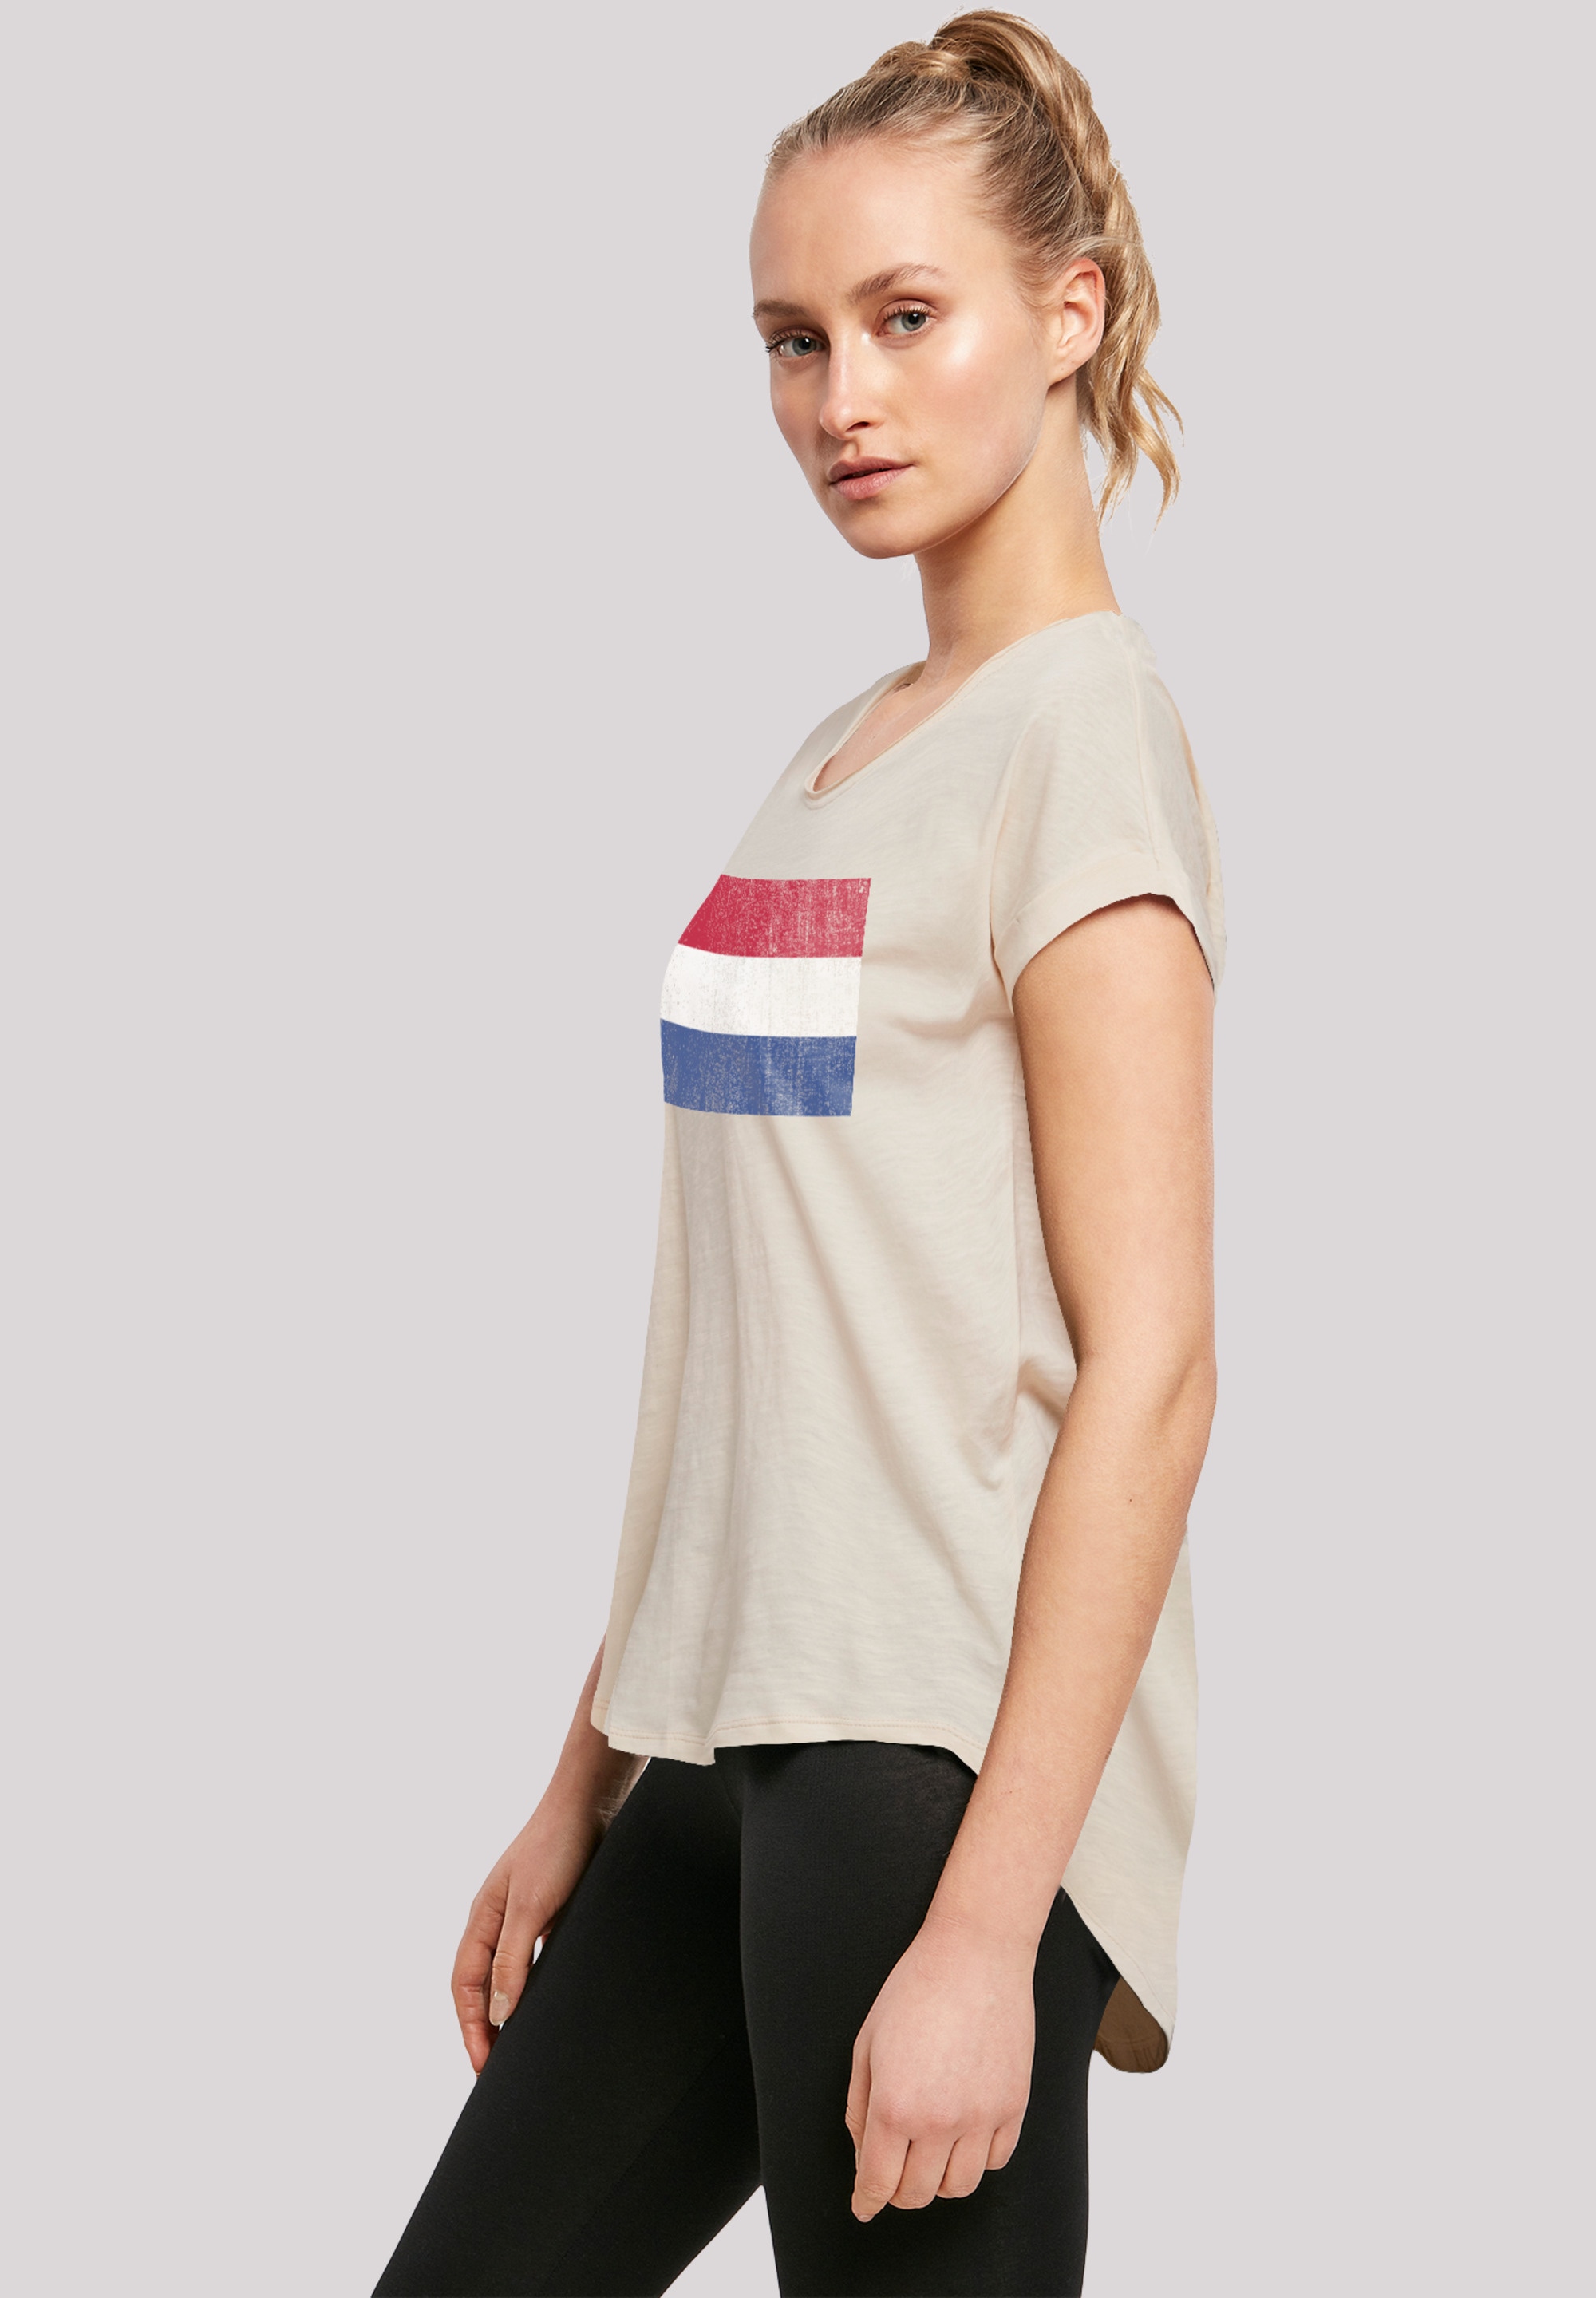 T-Shirt für Flagge | Holland kaufen distressed«, »Netherlands BAUR NIederlande Print F4NT4STIC